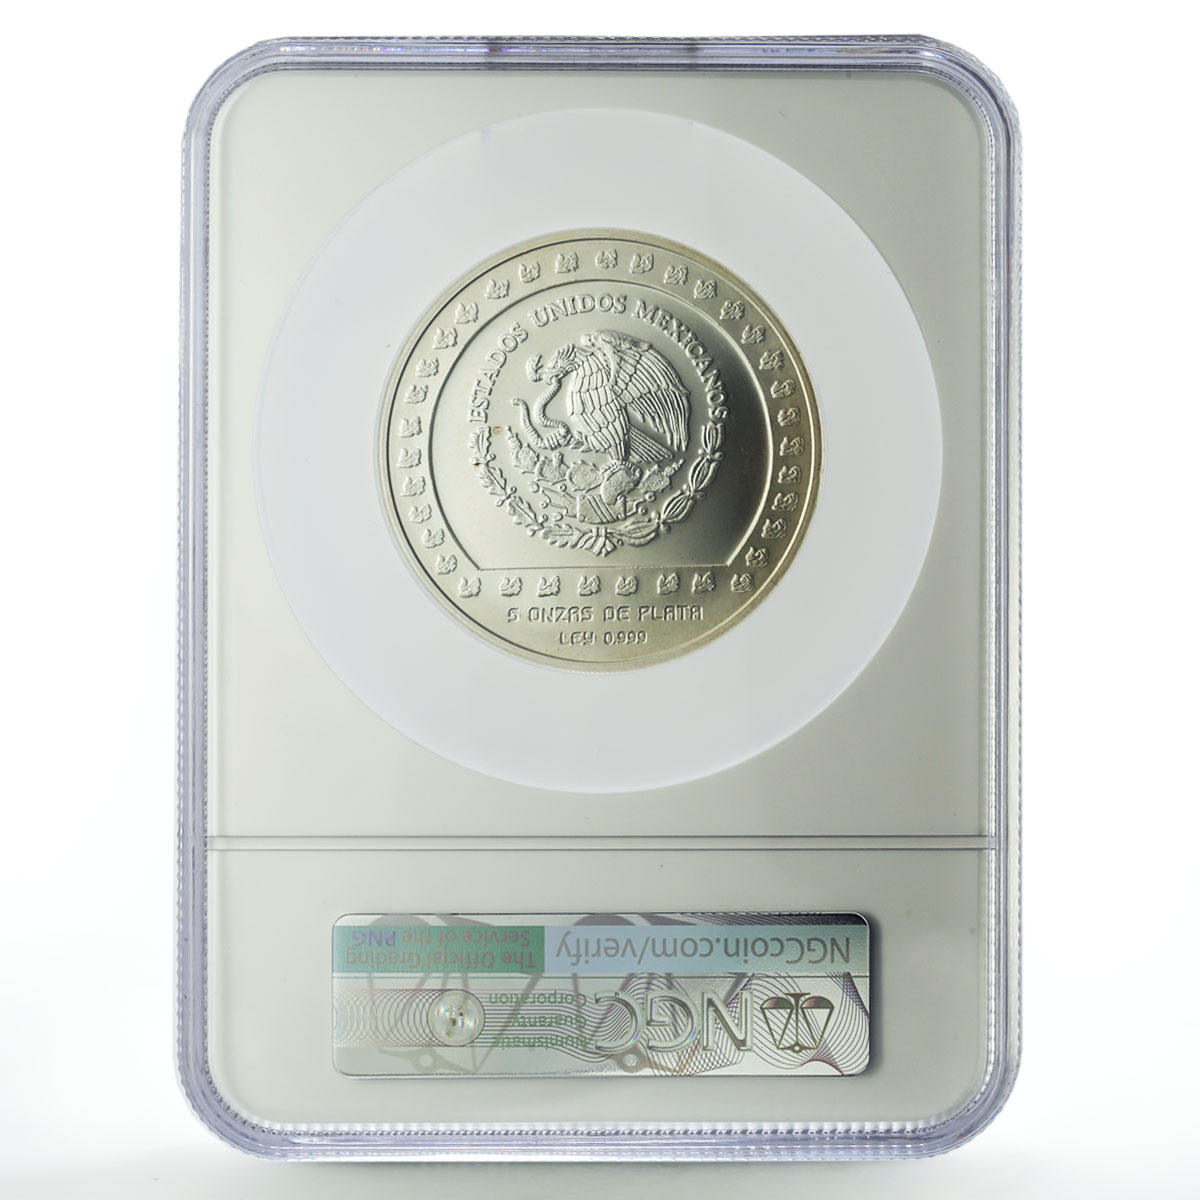 Mexico 10000 pesos Precolombina Piedra de Tizoc MS67 NGC silver coin 1992